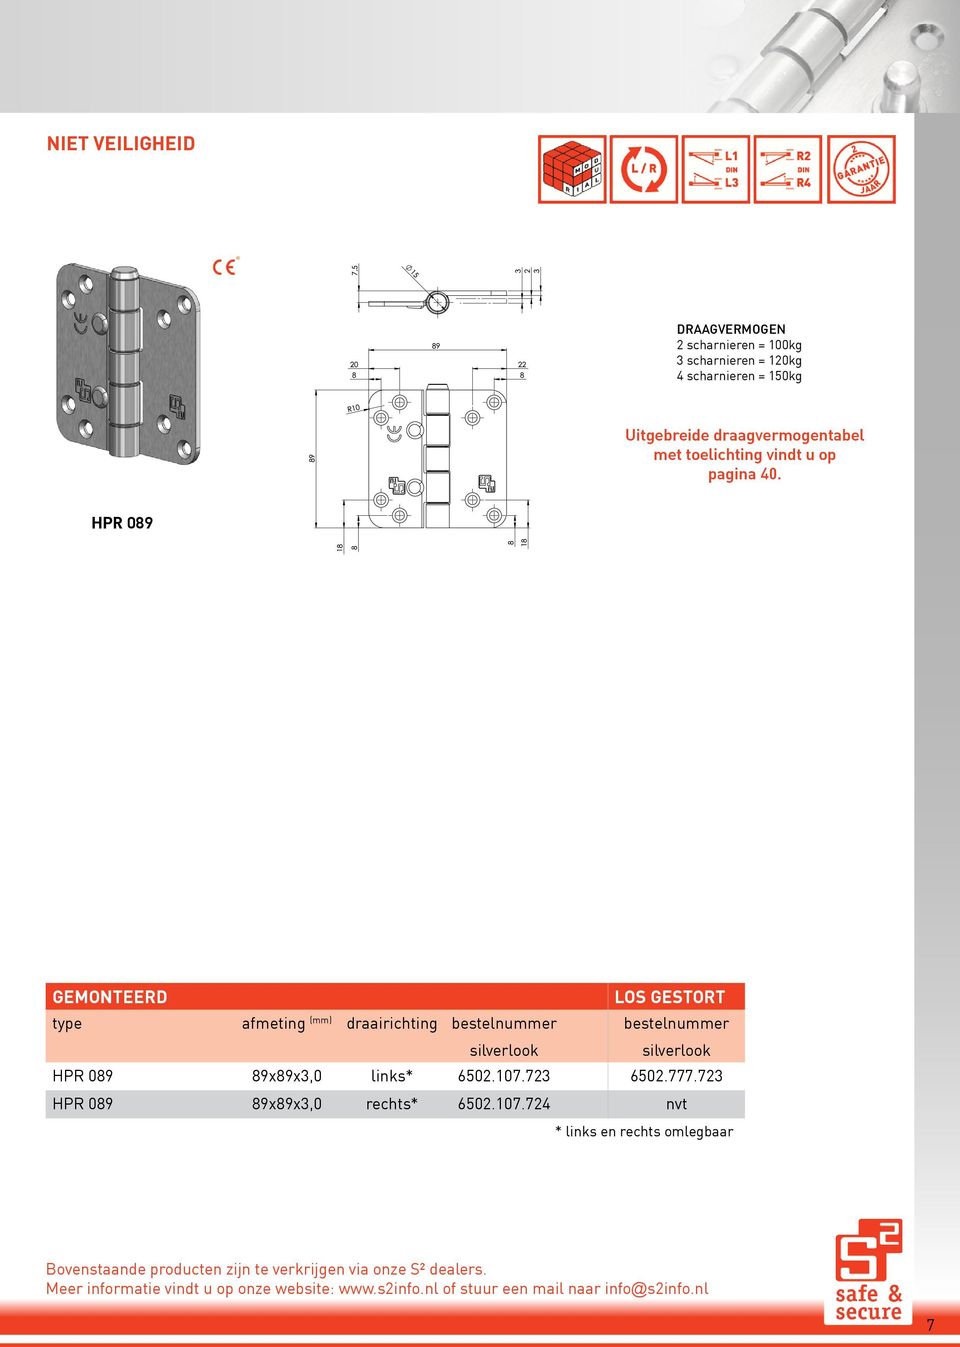 HPR 089 gemonteerd los gestort type afmeting (mm) draairichting bestelnummer bestelnummer HPR 089 89x89x3,0 links* 6502.107.